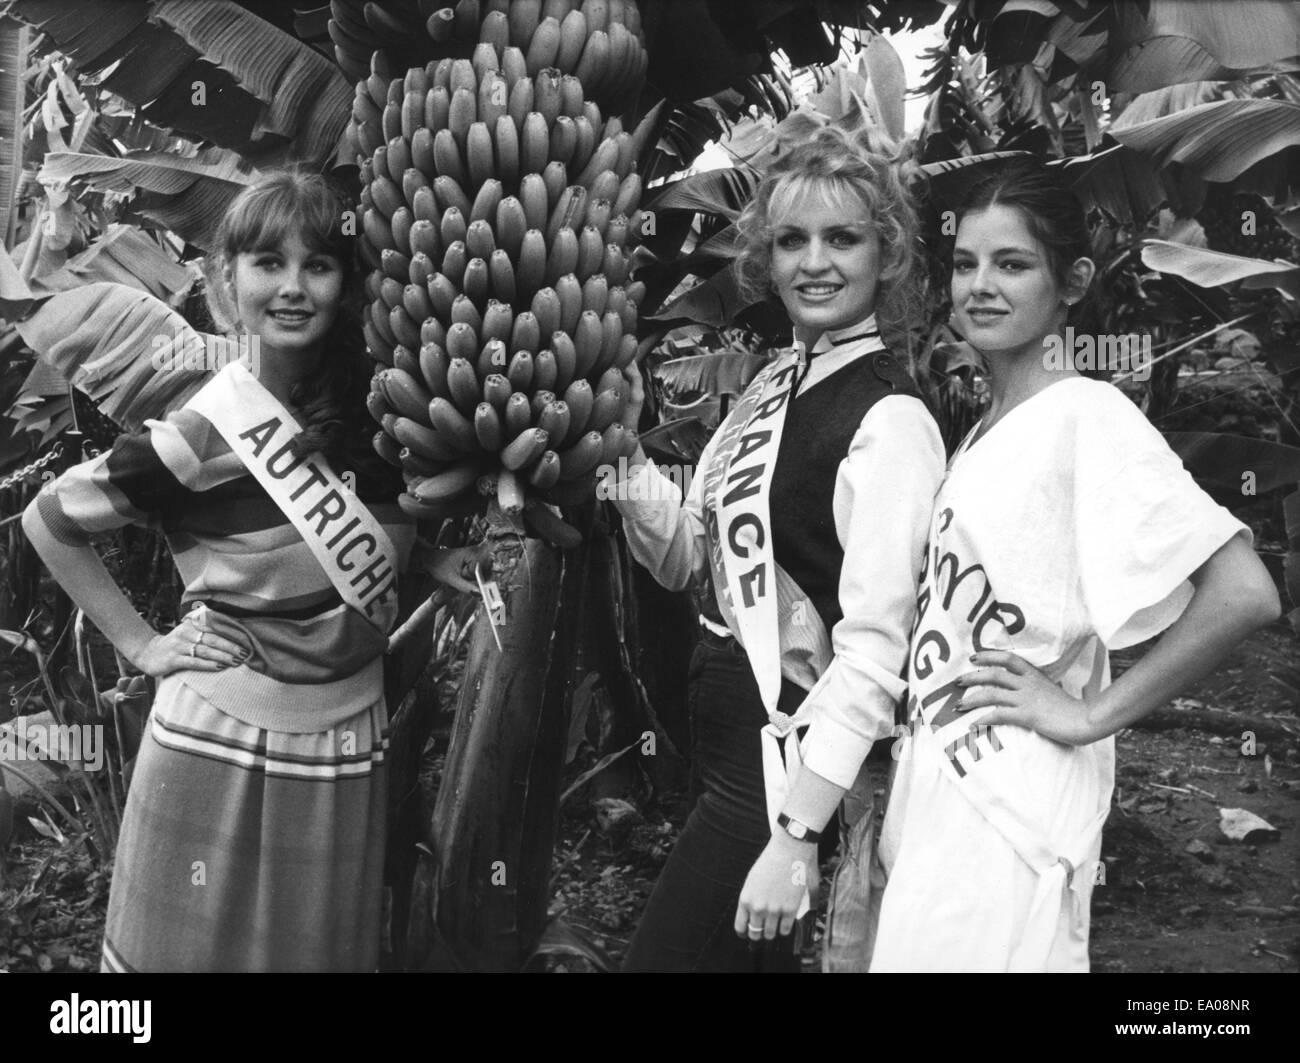 Tenerife, Puerto de la Cruz, Espagne. 28 Février, 1980. Blonde SYLVIE PARERA, Miss France 1979, vient d'être élue Miss élégance 1979 Tenerife et est maintenant un des candidats pour Miss Europe. Sylvie Parera, Miss Élégance, entourée de ses princesses, Miss Autriche, KARIN ZORN (L) et Miss Espagne LOLA FORNER, dans une bananeraie à Puerto Cruz de Tenerife. © Keystone Photos/ZUMA/ZUMAPRESS.com/Alamy fil Live News Banque D'Images